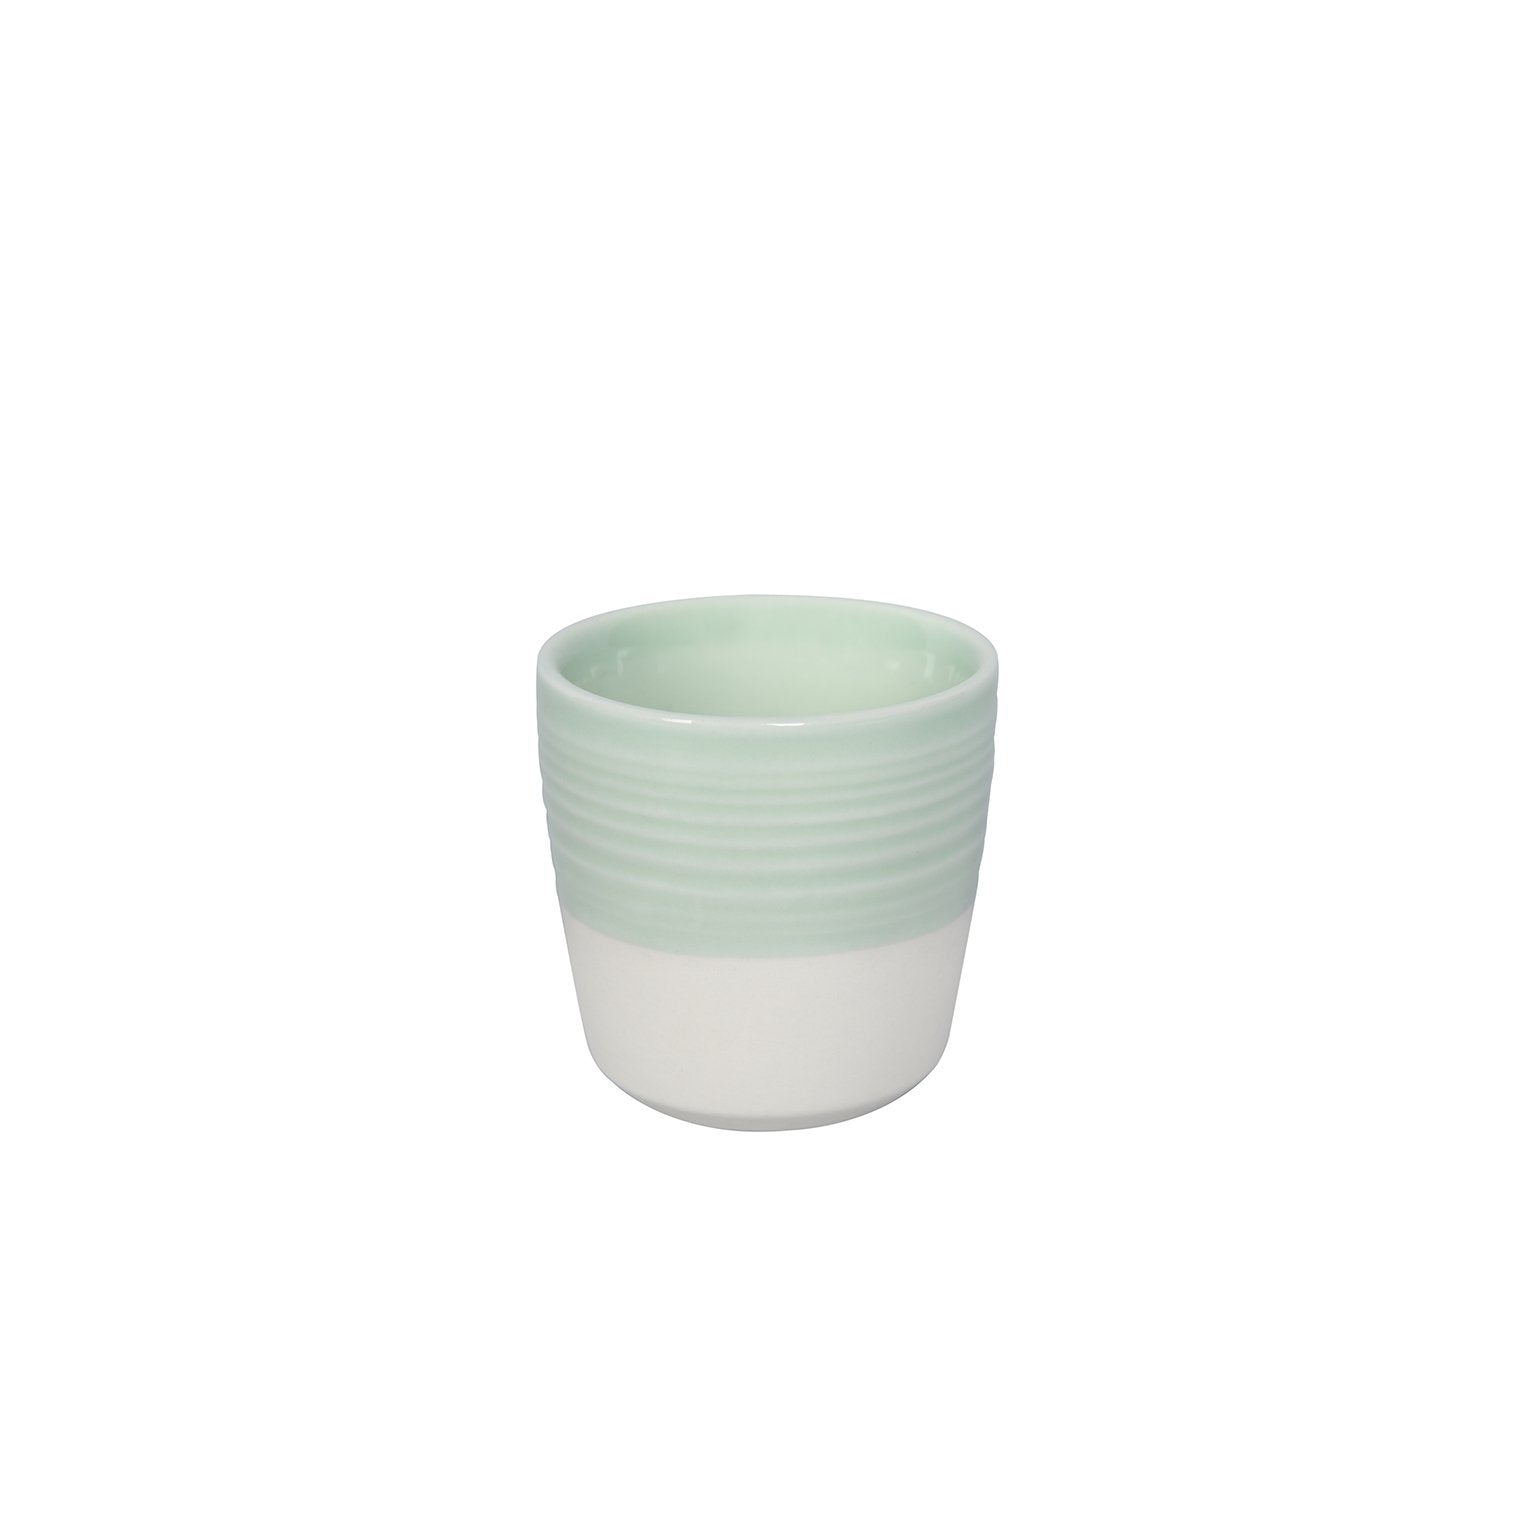 Loveramics Tumbler Espresso Cup (Celadon Green) 80ml